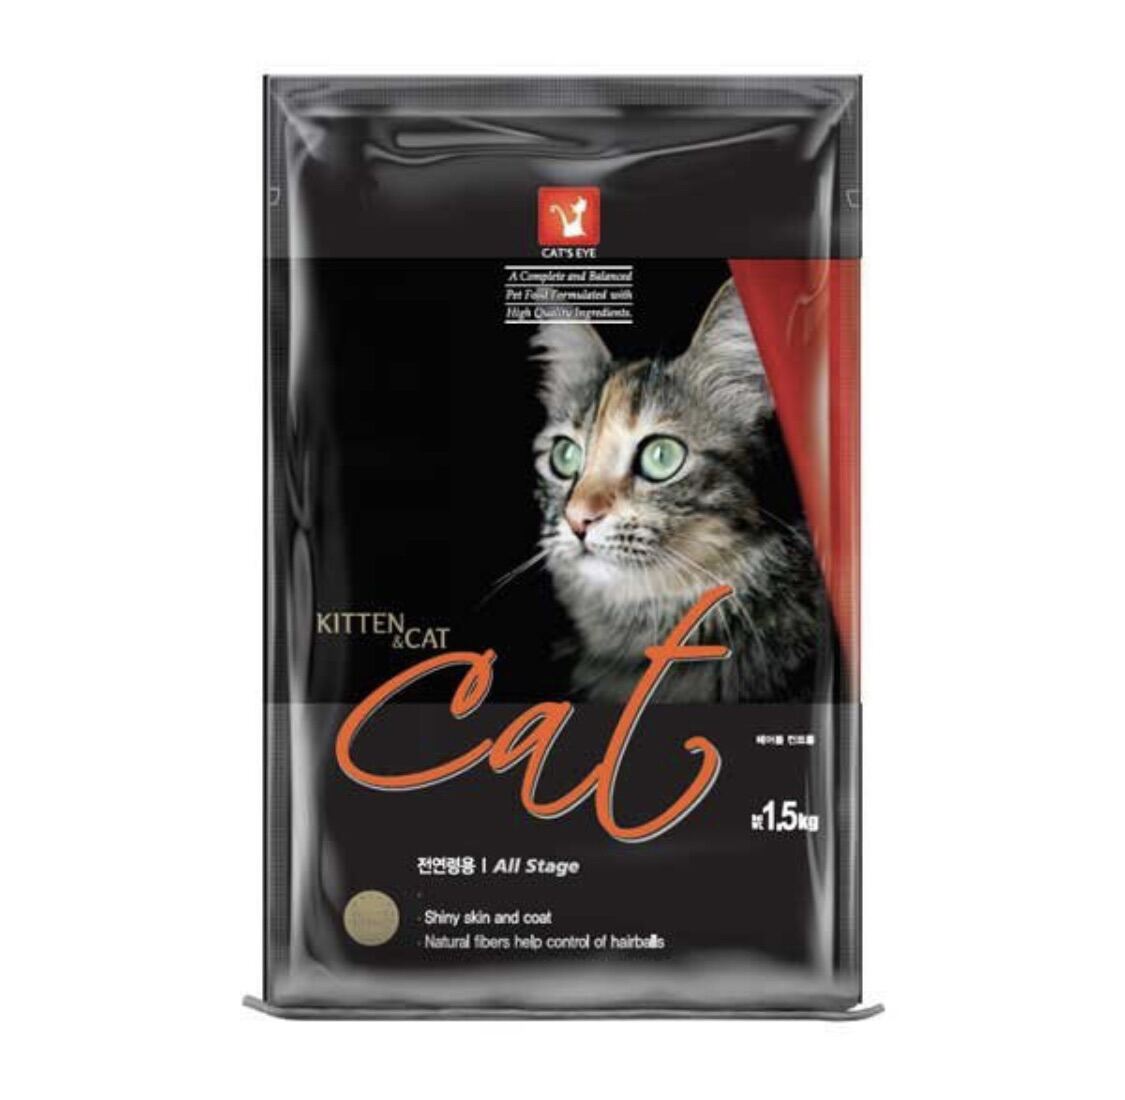 Hạt Cateye túi chiết 1kg cho mèo cưng thumbnail